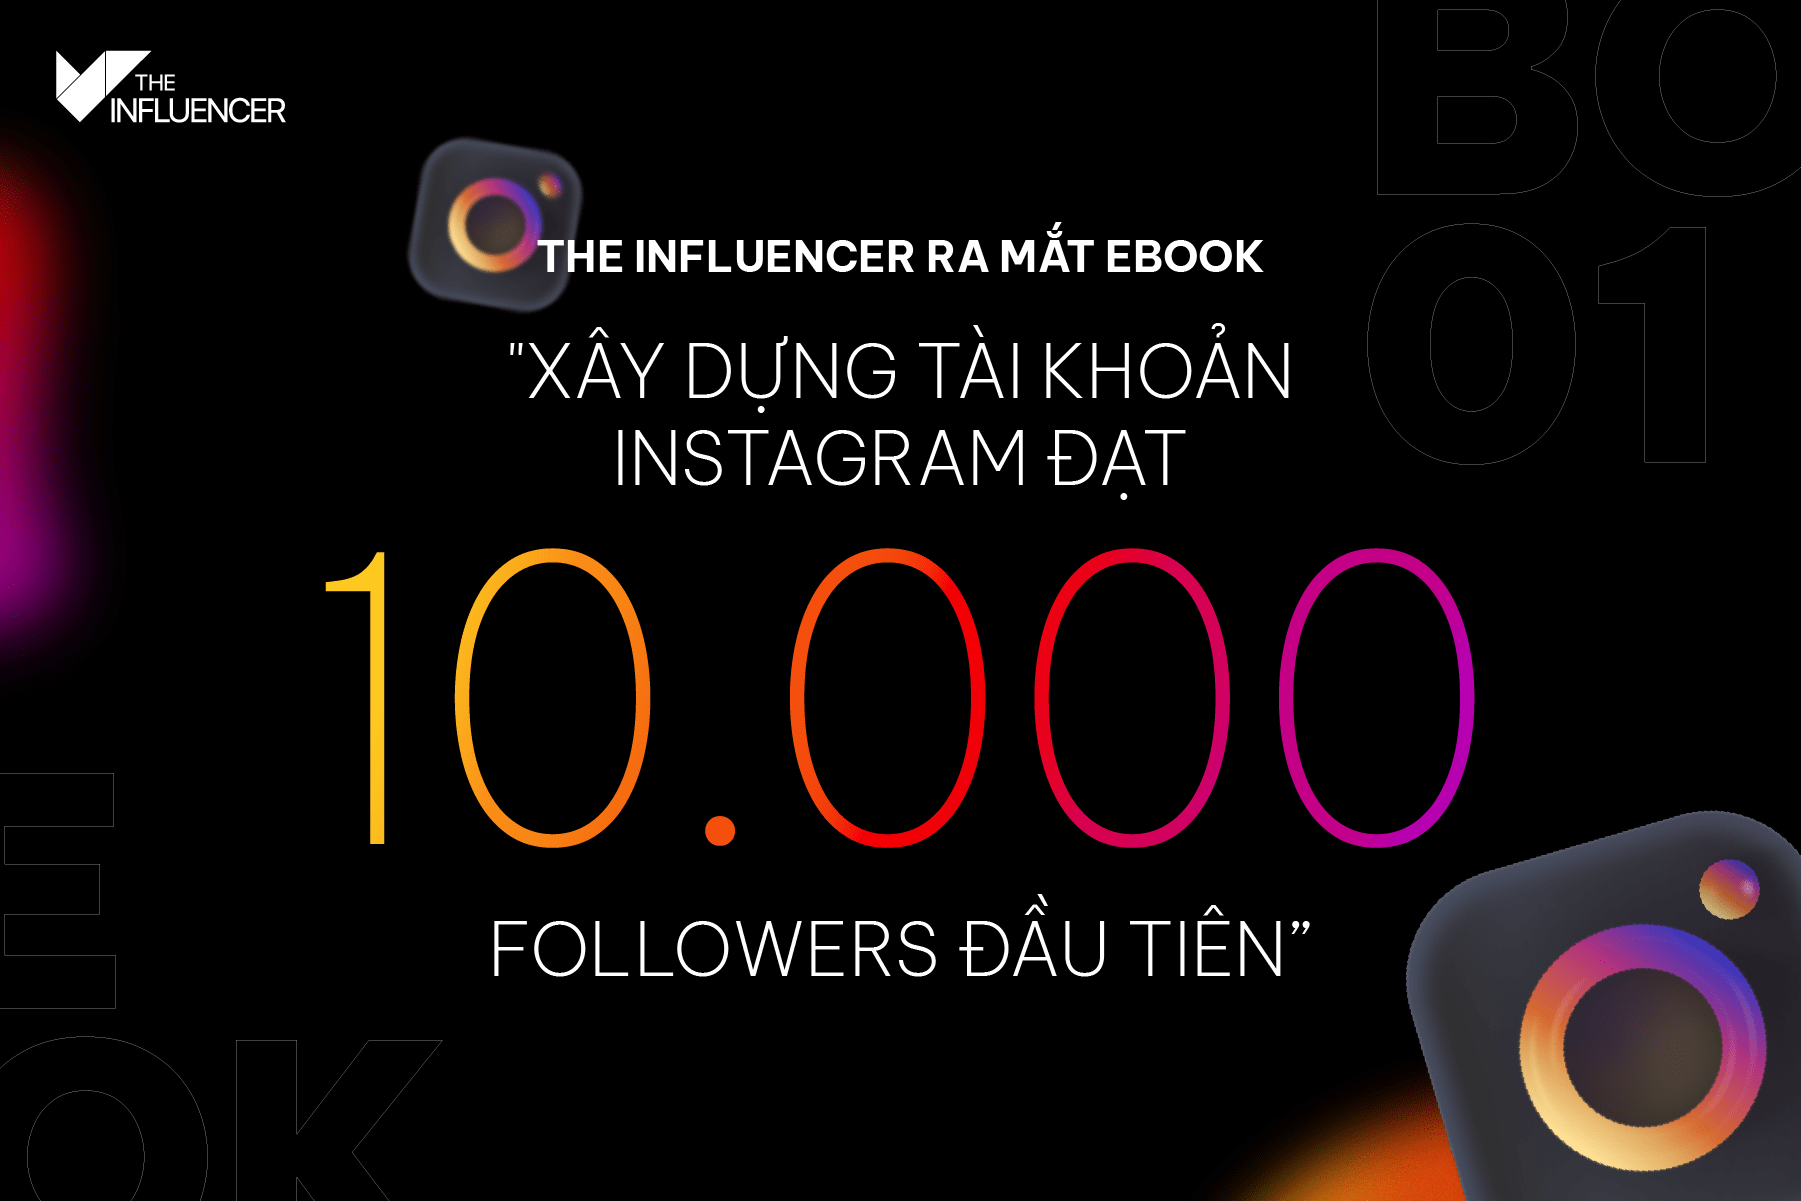 The Influencer ra mắt ebook “Xây dựng tài khoản Instagram đạt 10.000 followers đầu tiên”